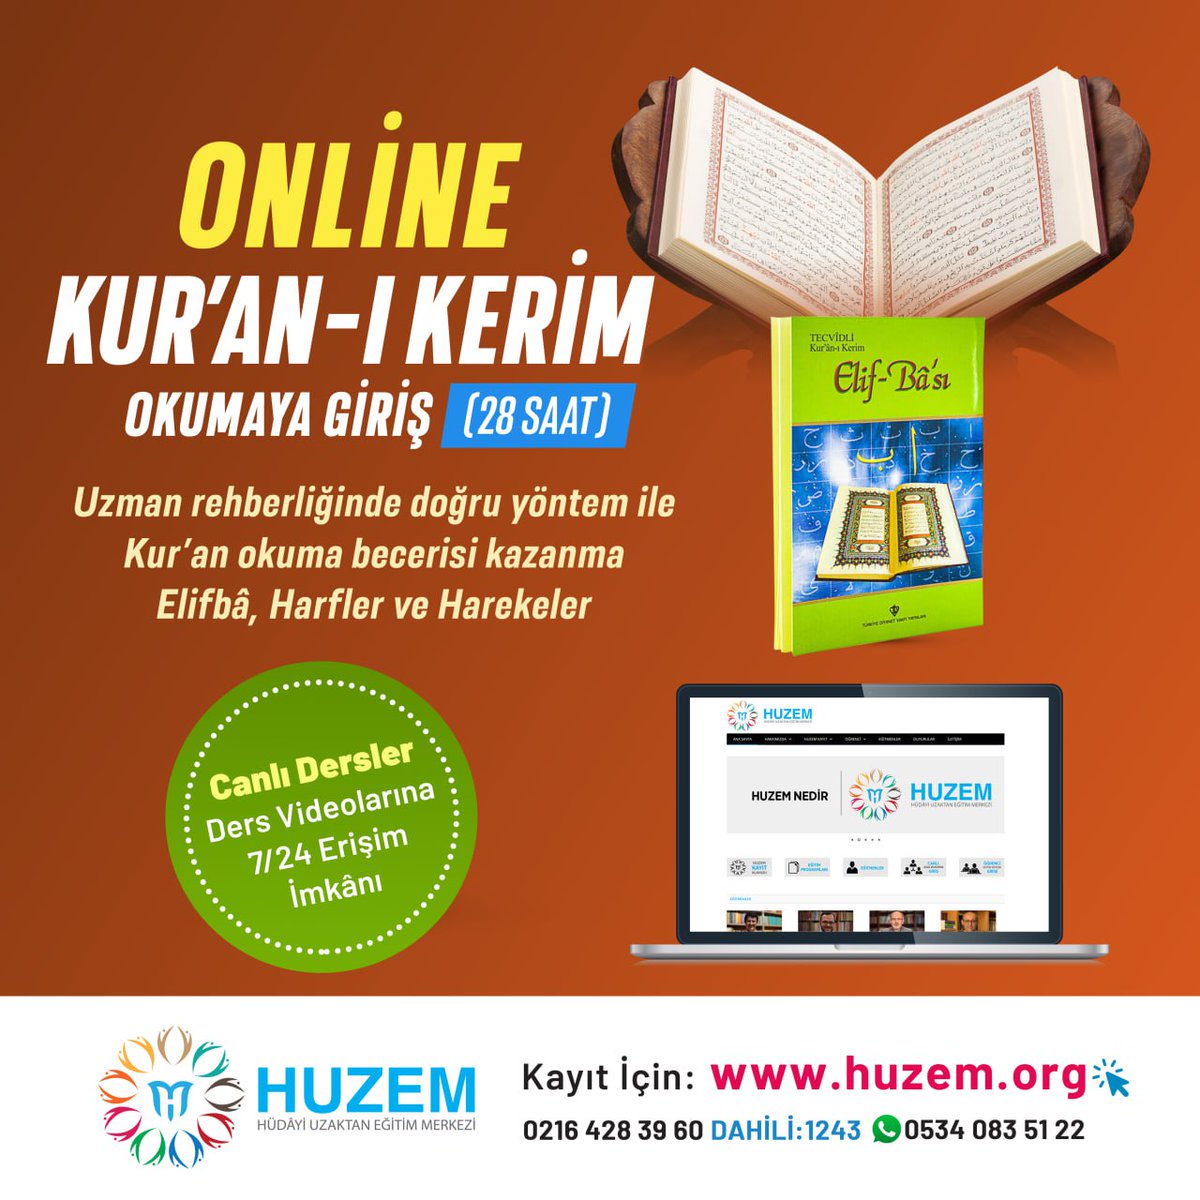 'Online Kur'an-ı Kerim öğrenmek istiyorum' diyenler için fırsat! #kuranöğreniyorum #kurandersleri

huzem.org